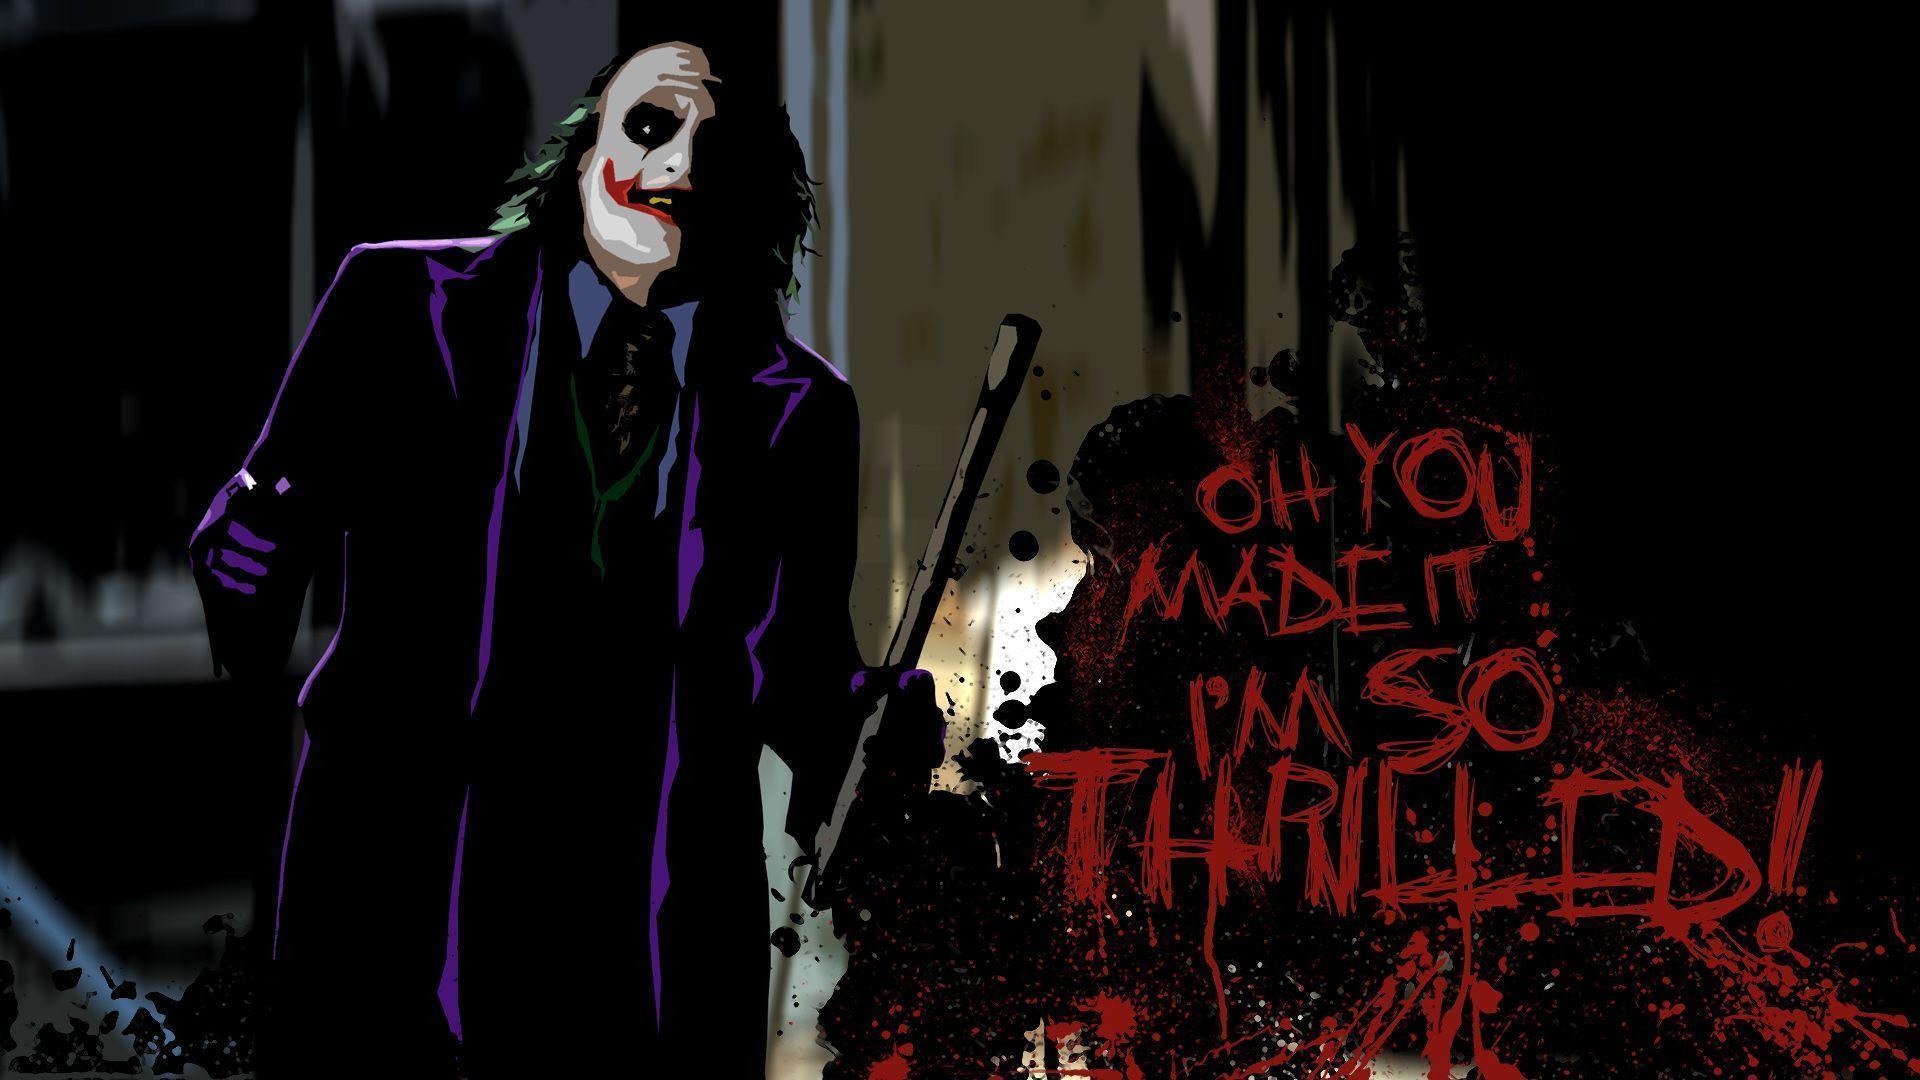 Joker Quotes Wallpapers - Wallpaper Cave